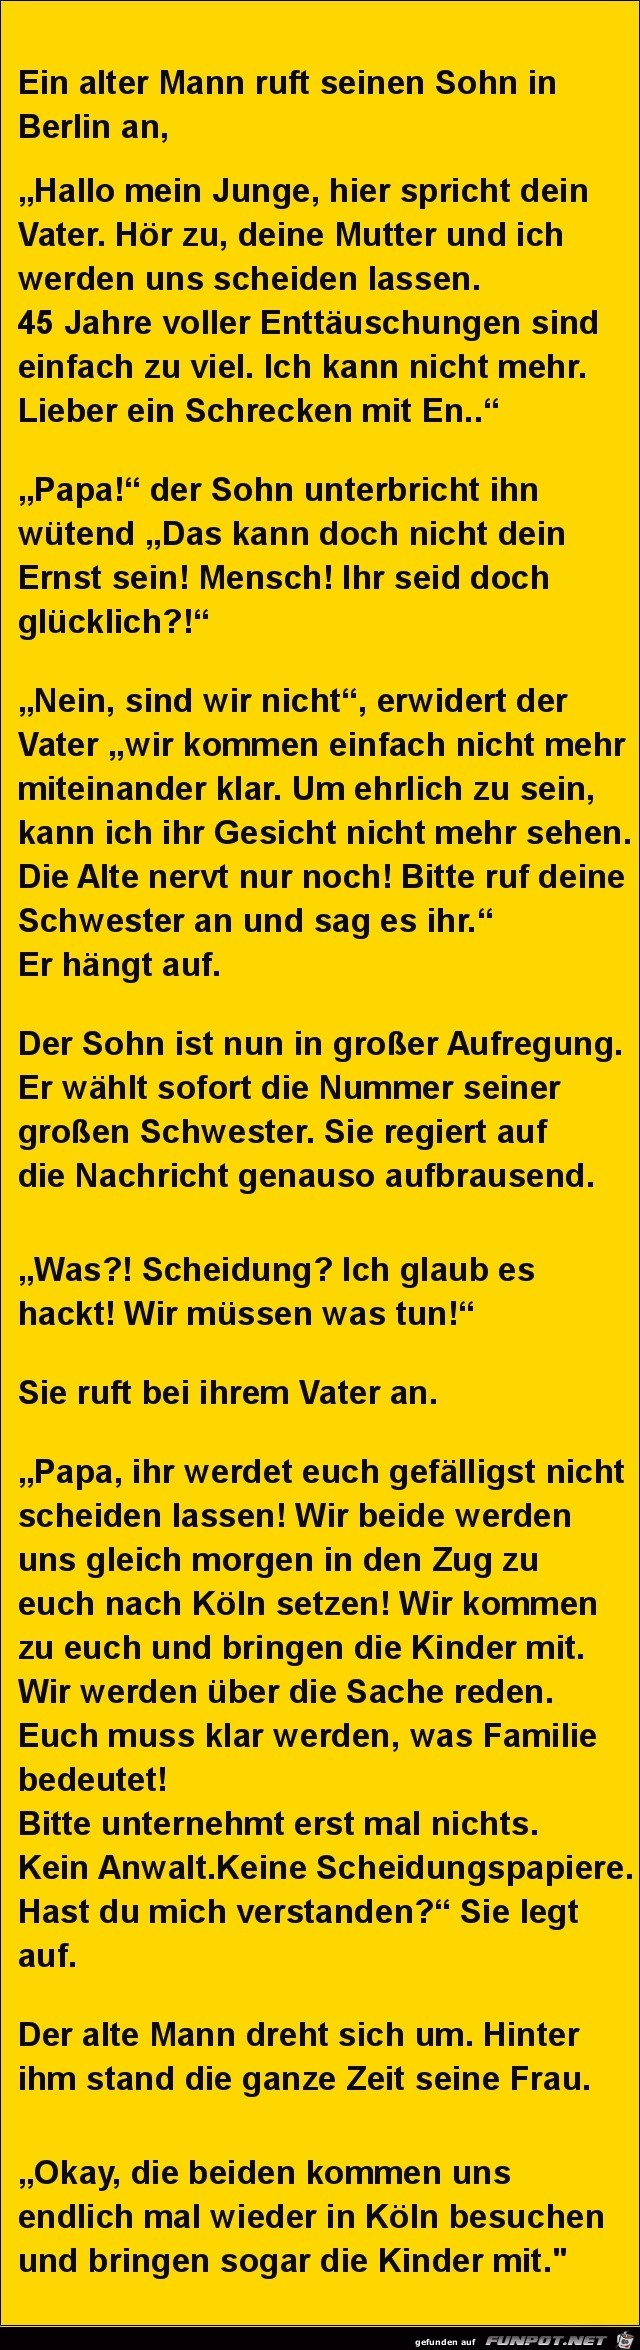 ein alter Mann ruft seinen Sohn in Berlin an:.......